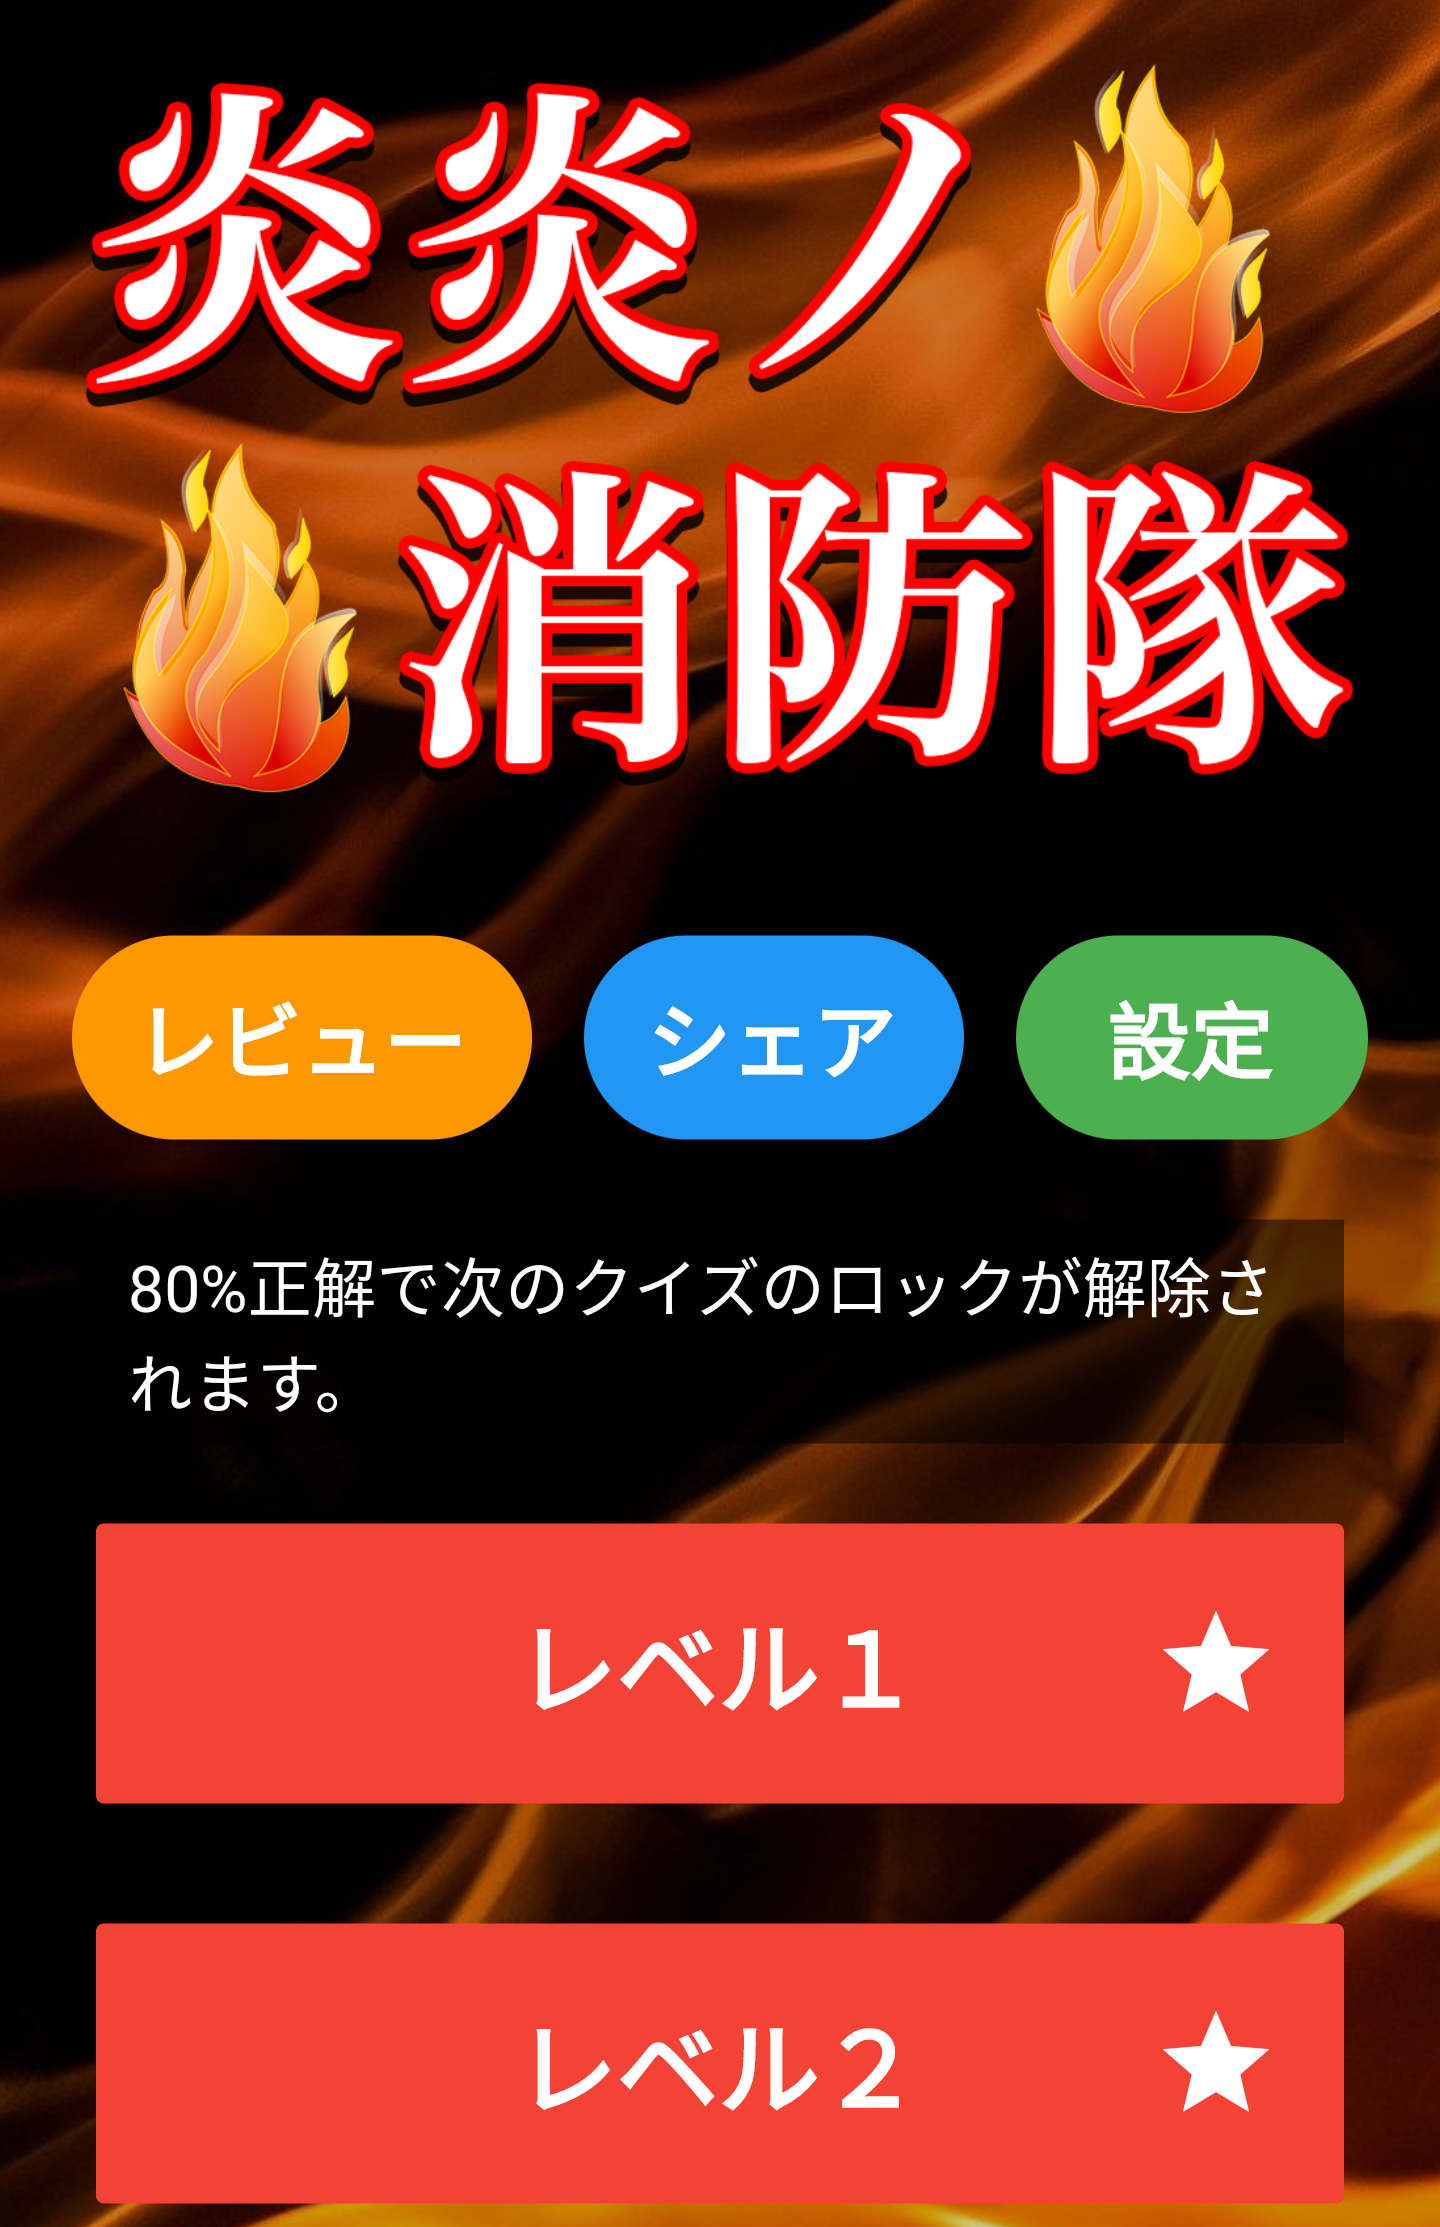 Screenshot 1 of Aplikasi Diagnosis Kuis Pemadam Kebakaran - Game Gratis 1.0.3